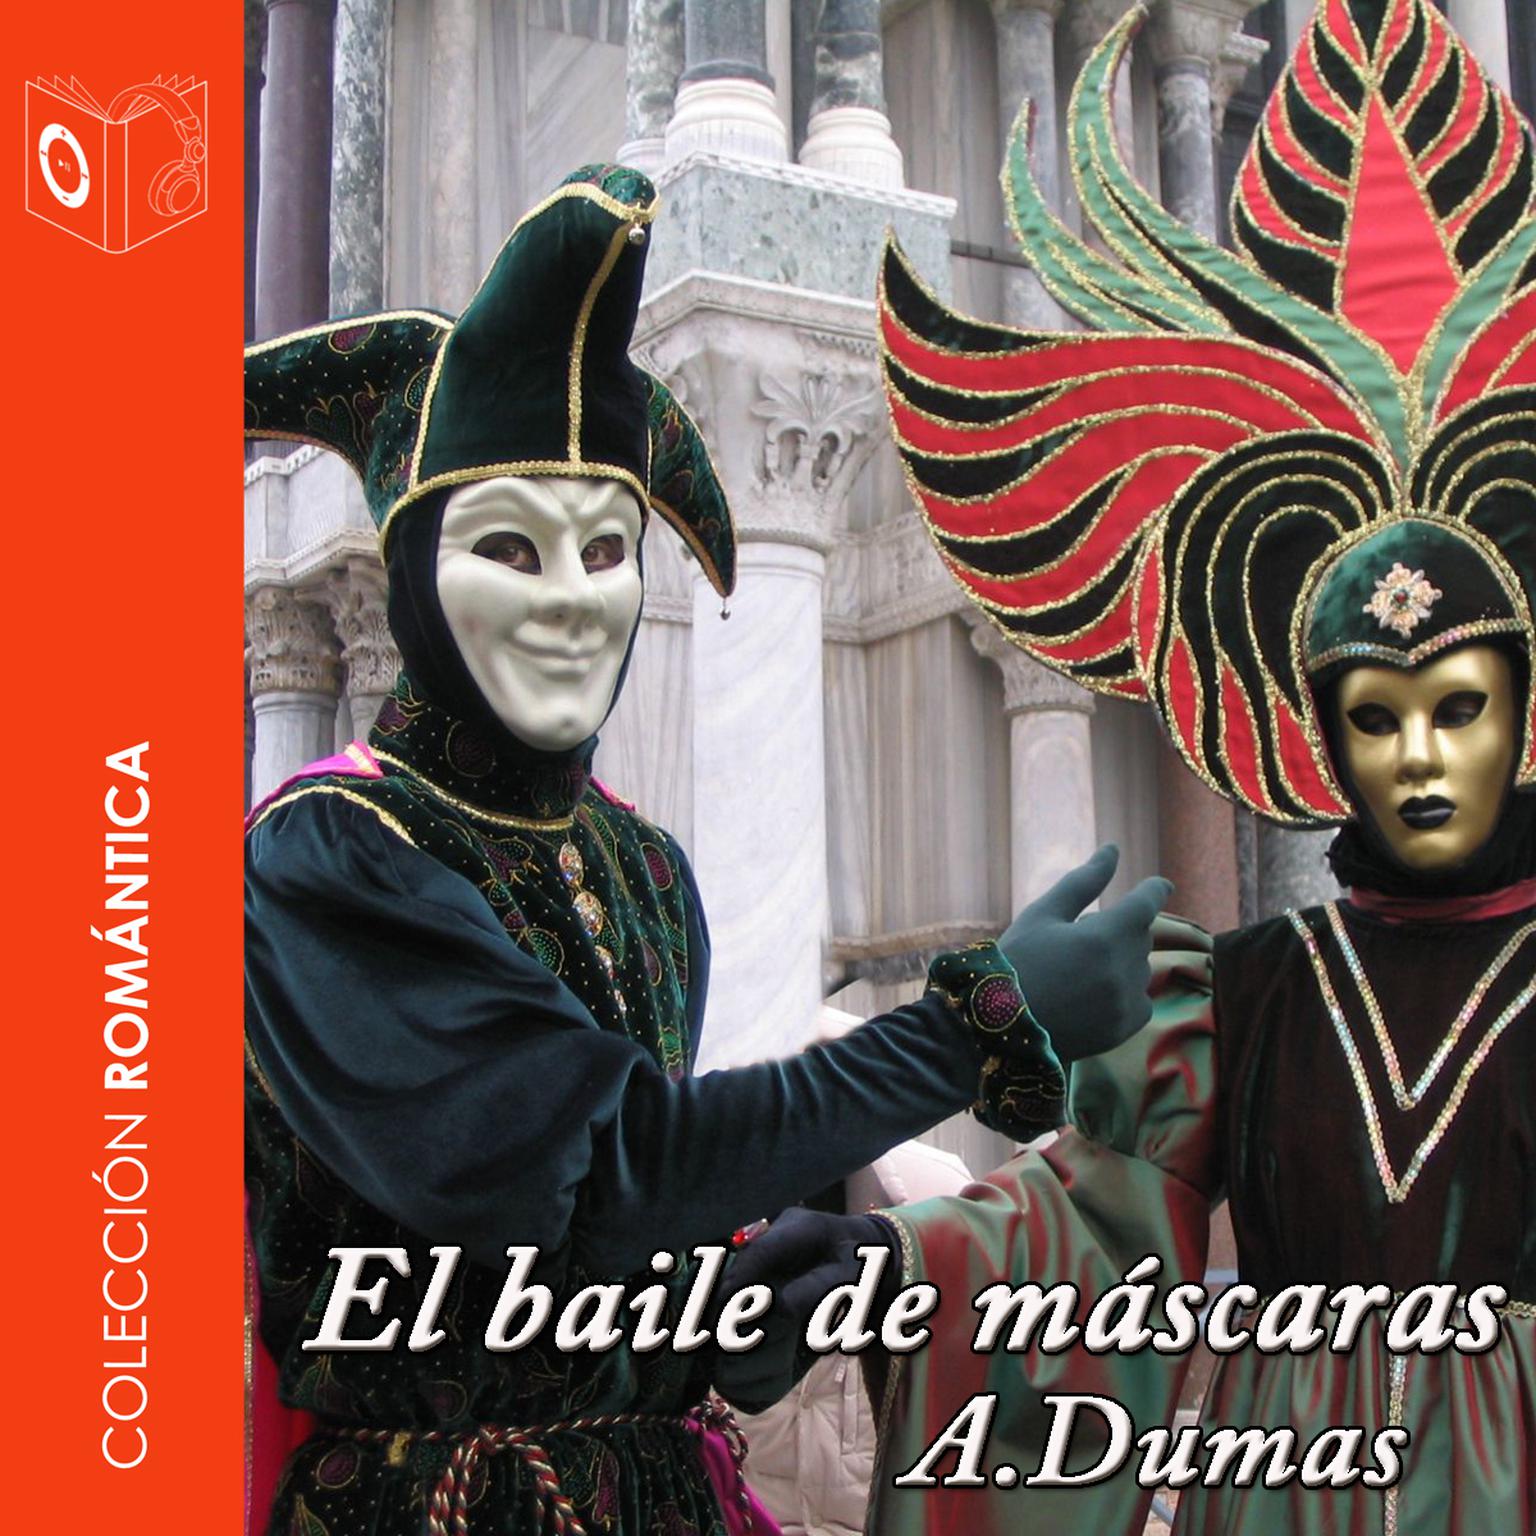 El baile de máscaras Audiobook, by Alejandro Dumas